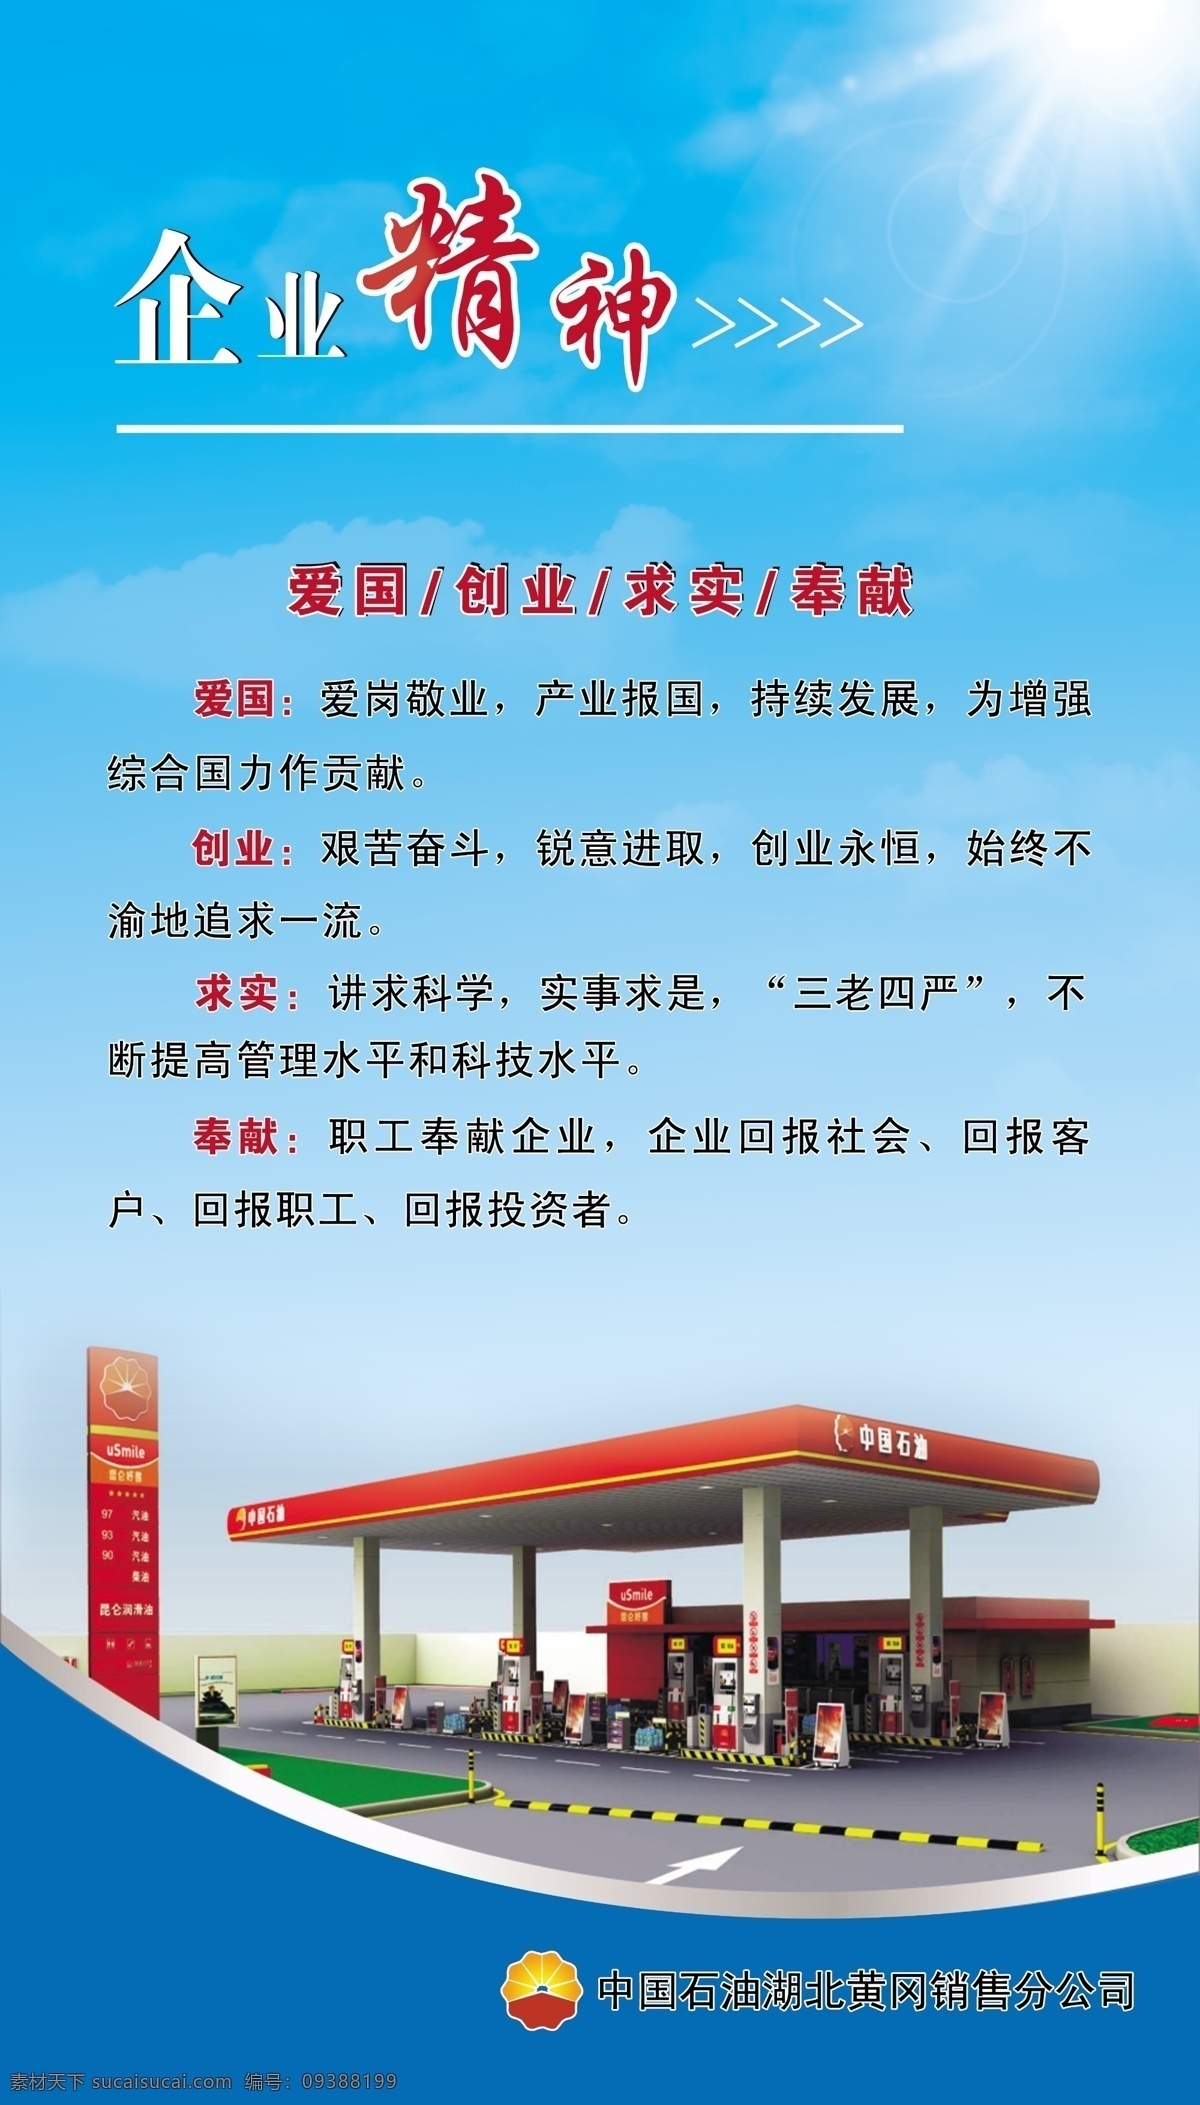 中国石油 企业精神 石油效果图 公司简价 企业广告牌 公司广告 展板模板 广告设计模板 源文件